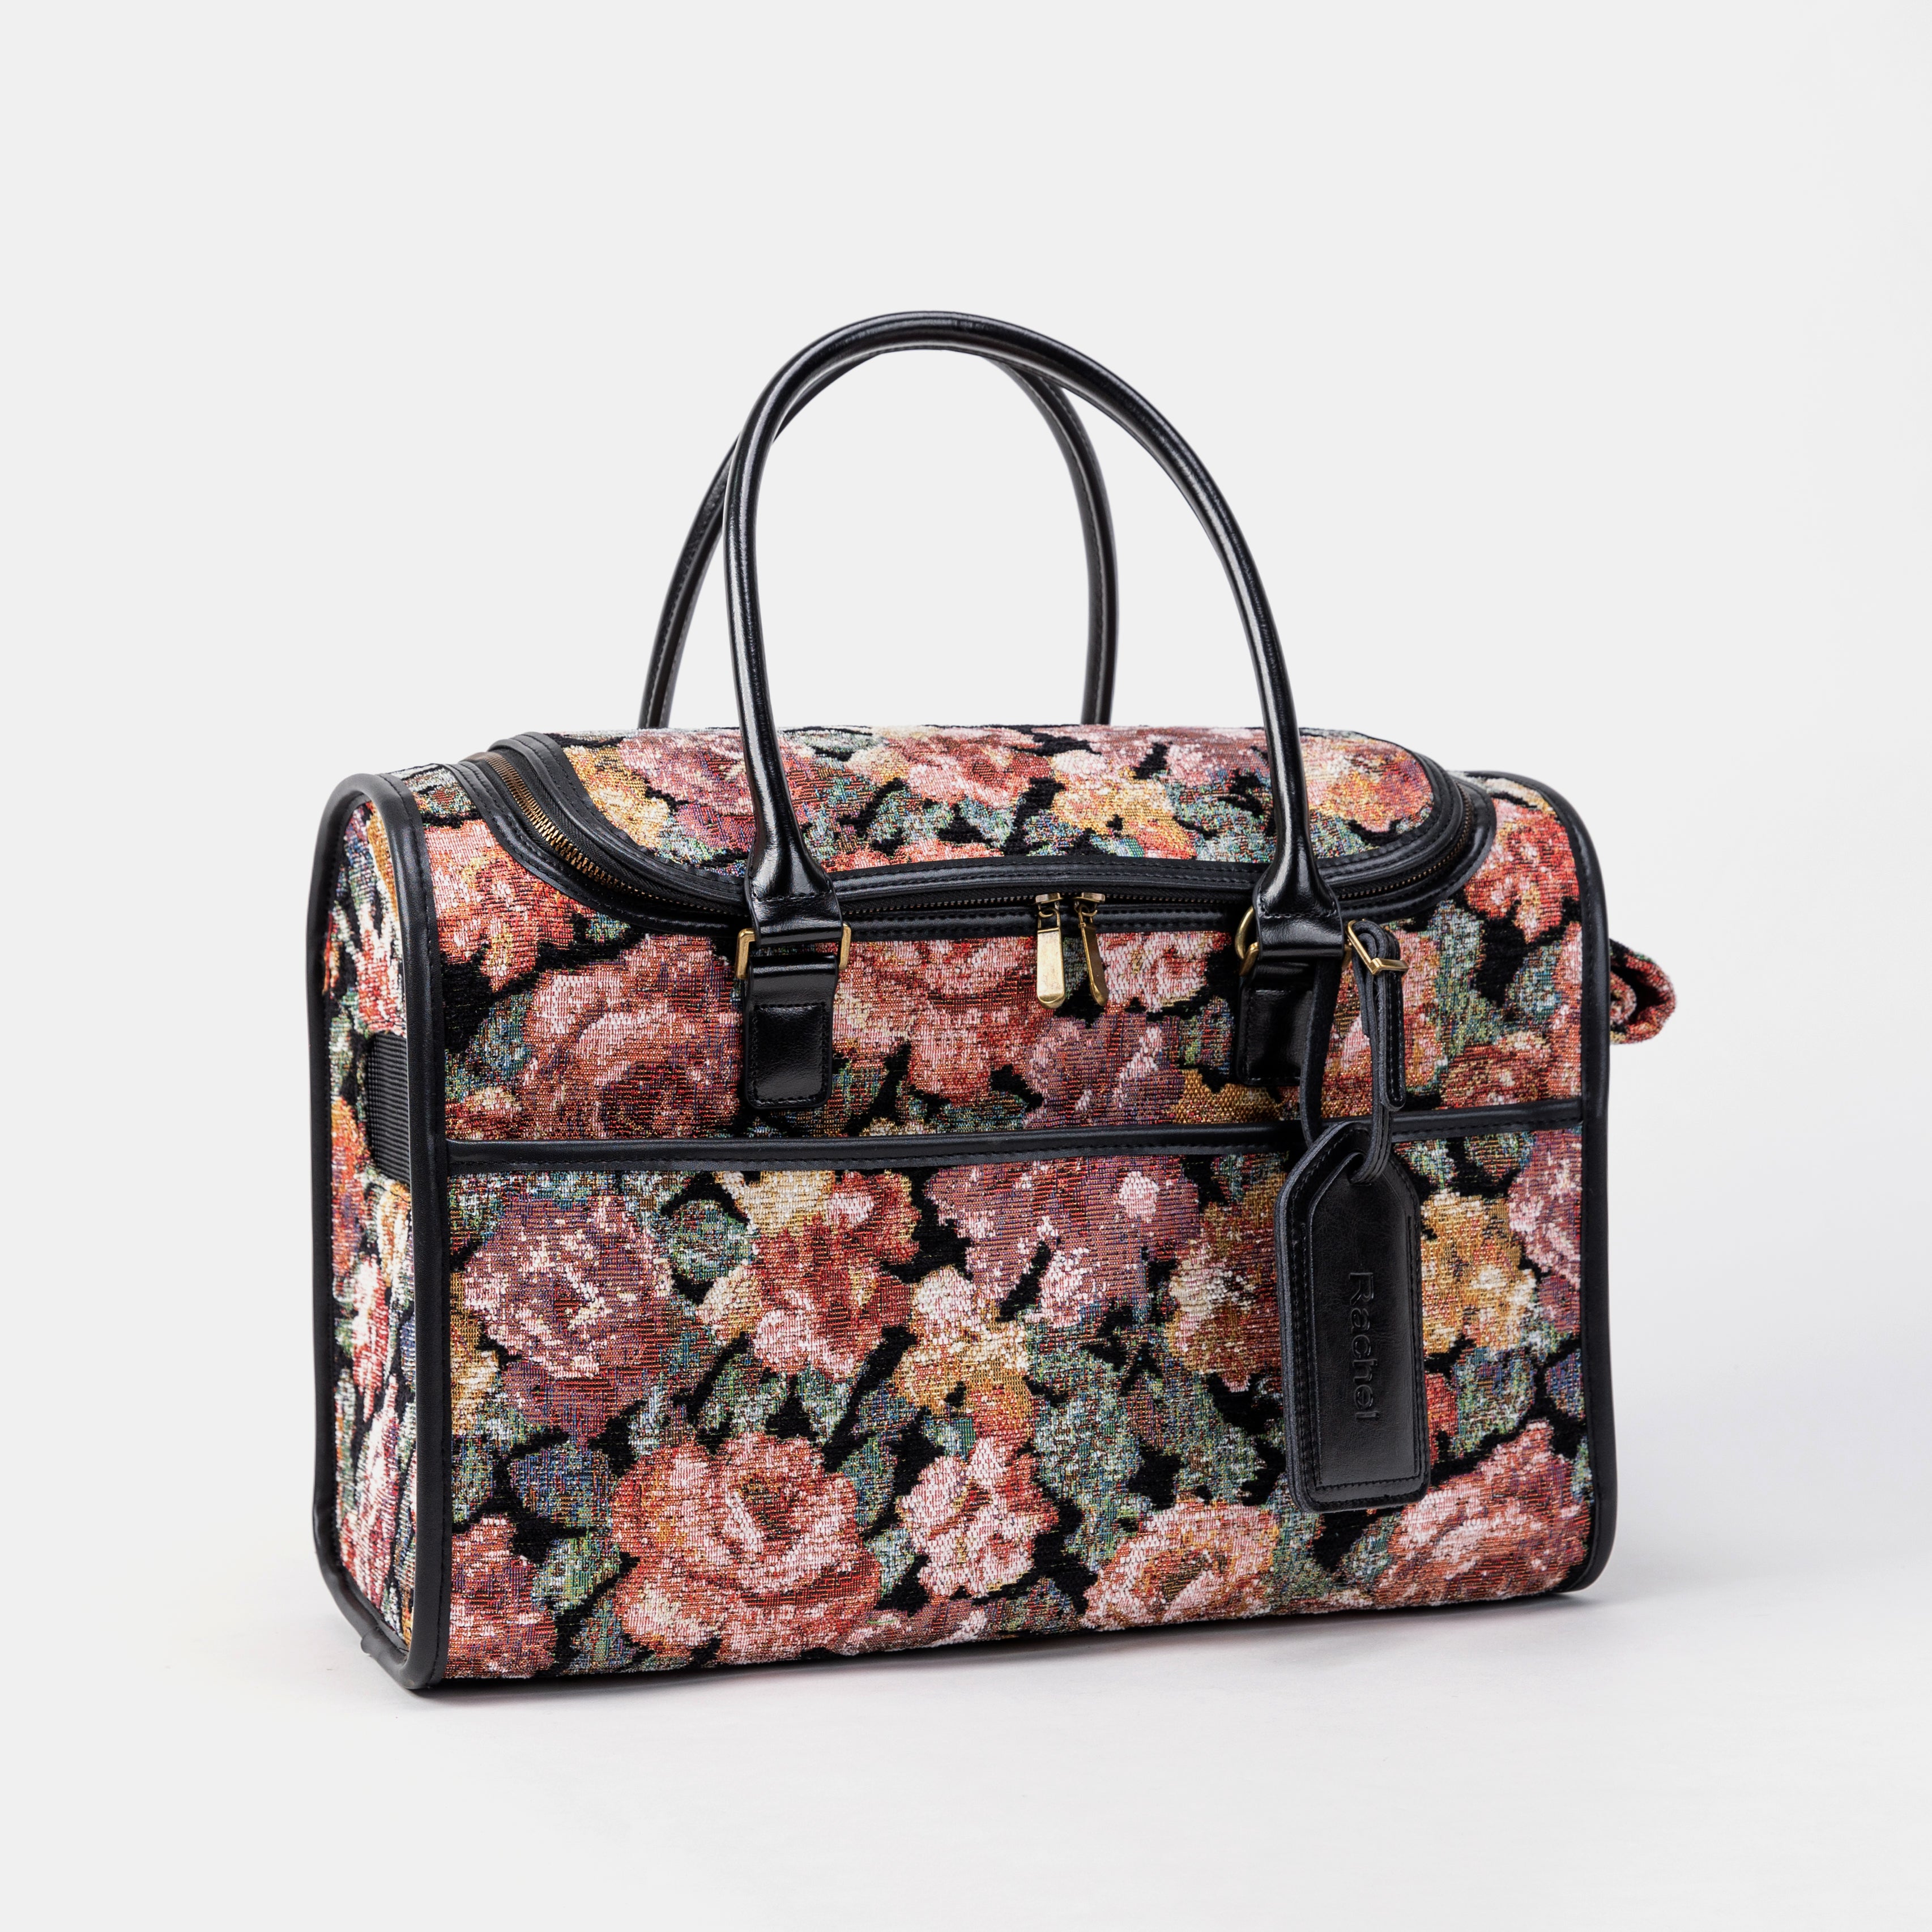 Travel Dog Carrier Bag Floral Rose Overview